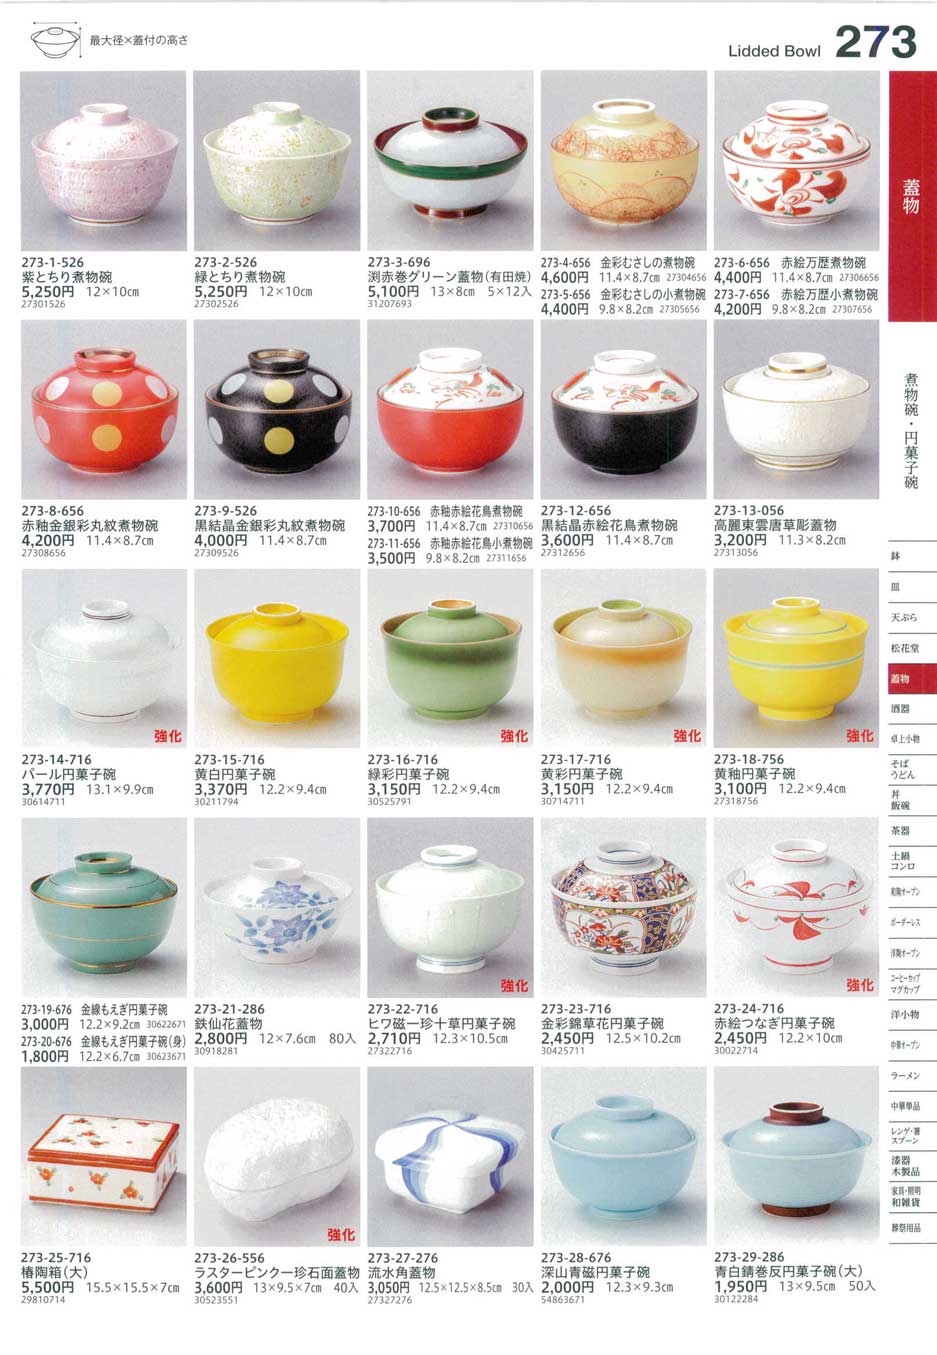 いラインアップ 10個セット円菓子 金唐草円菓子碗 11.5 x 7.5cm 強化